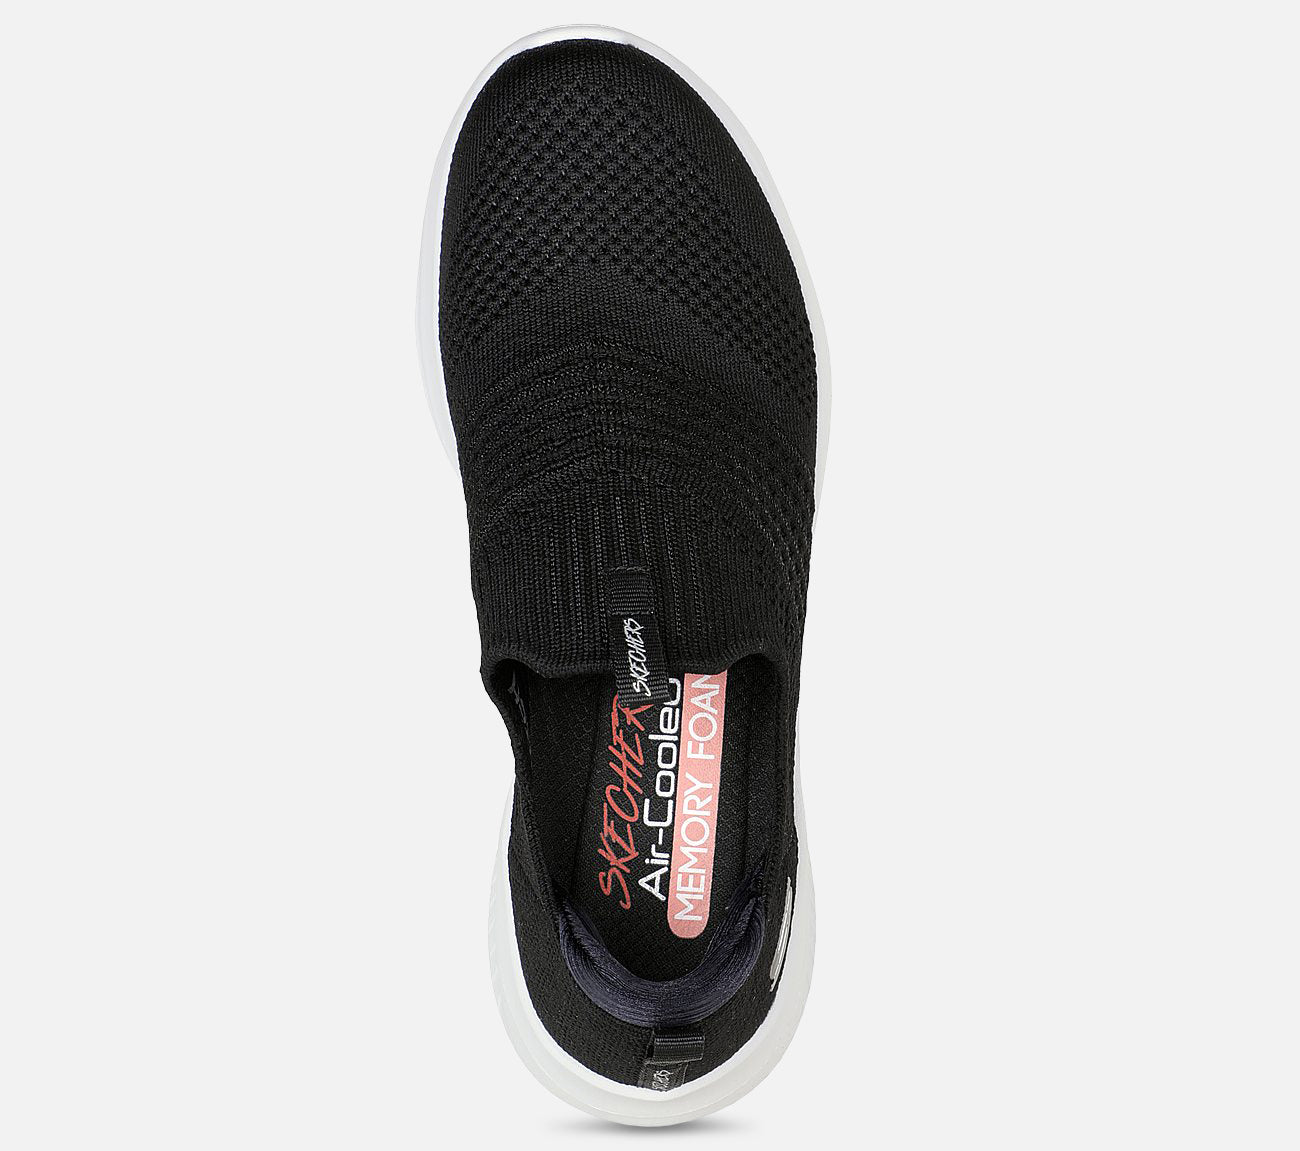 Ultra Flex 3.0 - Classy Charm Shoe Skechers